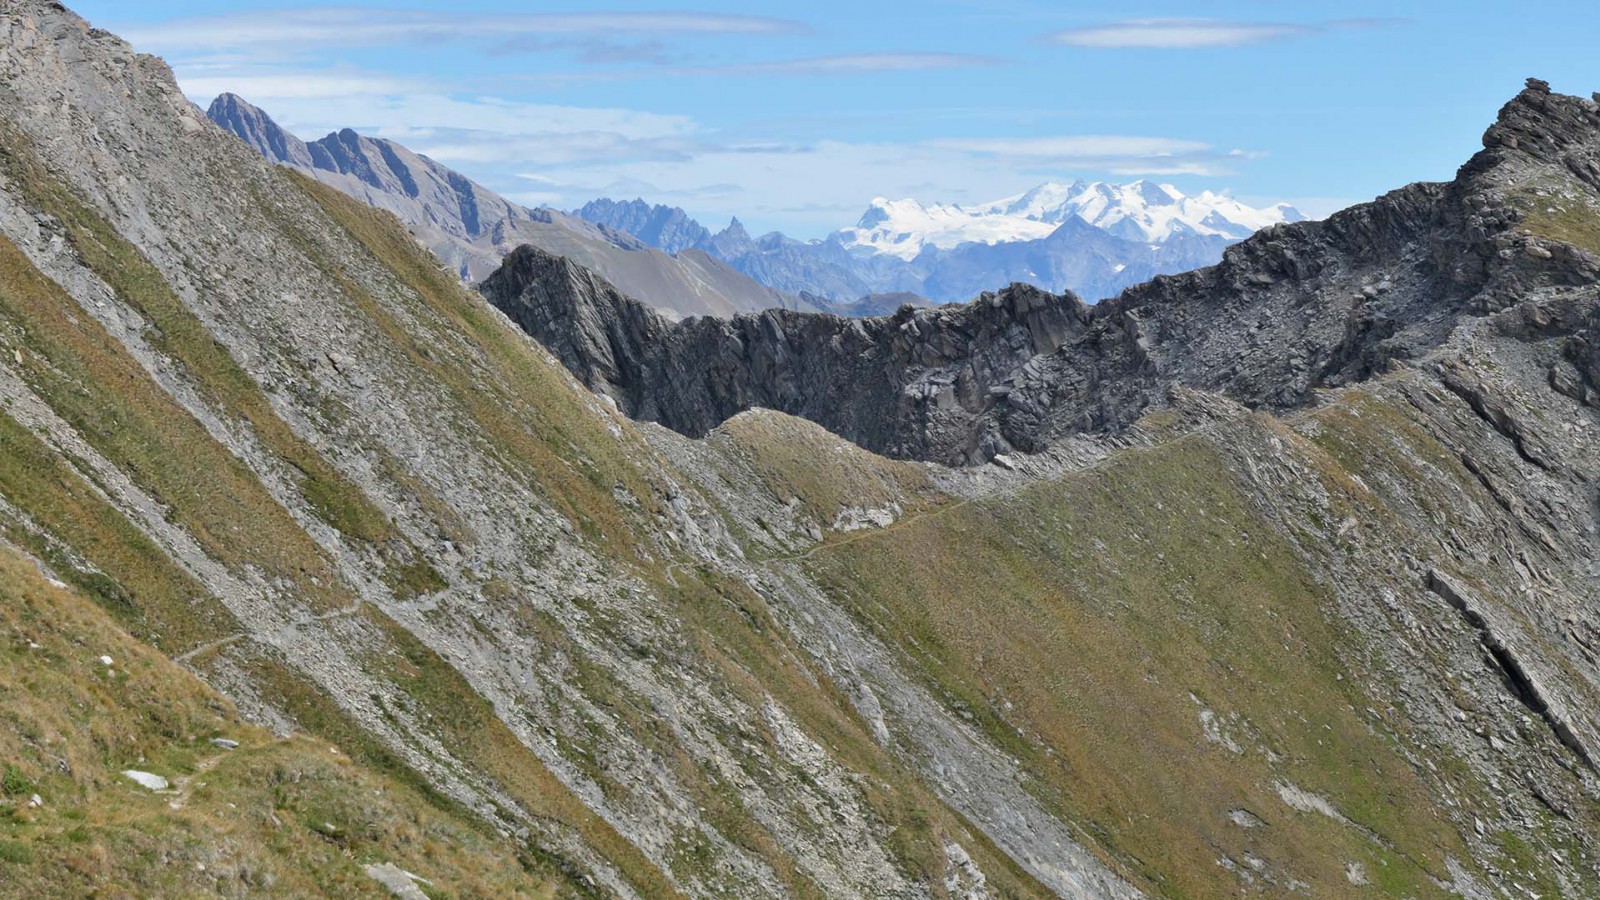  Berrio Blanc / Mont Nix : sentier étroit, pas vraiment technique mais qui traverse une pente marquée (expo max juste après le col du Berrio Blanc) (Vue du col de Berrio Blanc vers le nord)